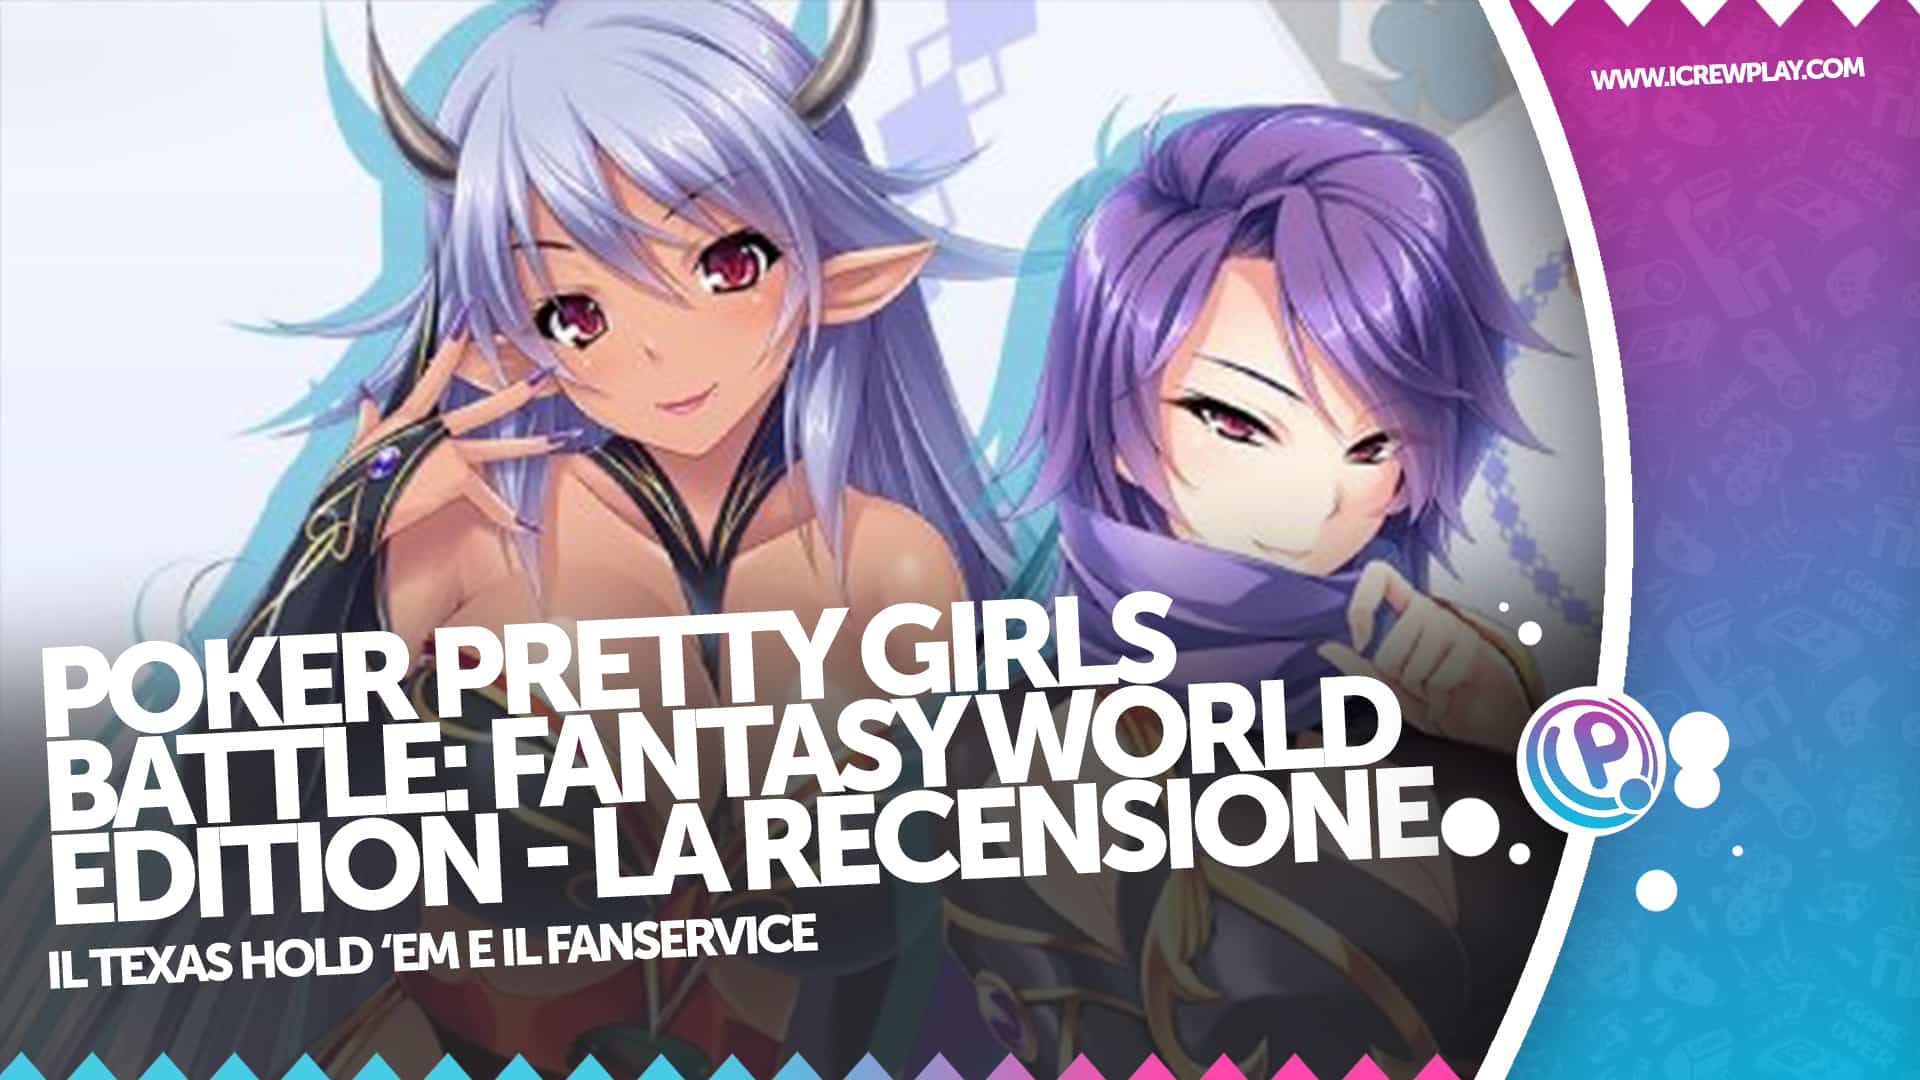 Poker Pretty Girls Battle: Fantasy World Edition la recensione 2